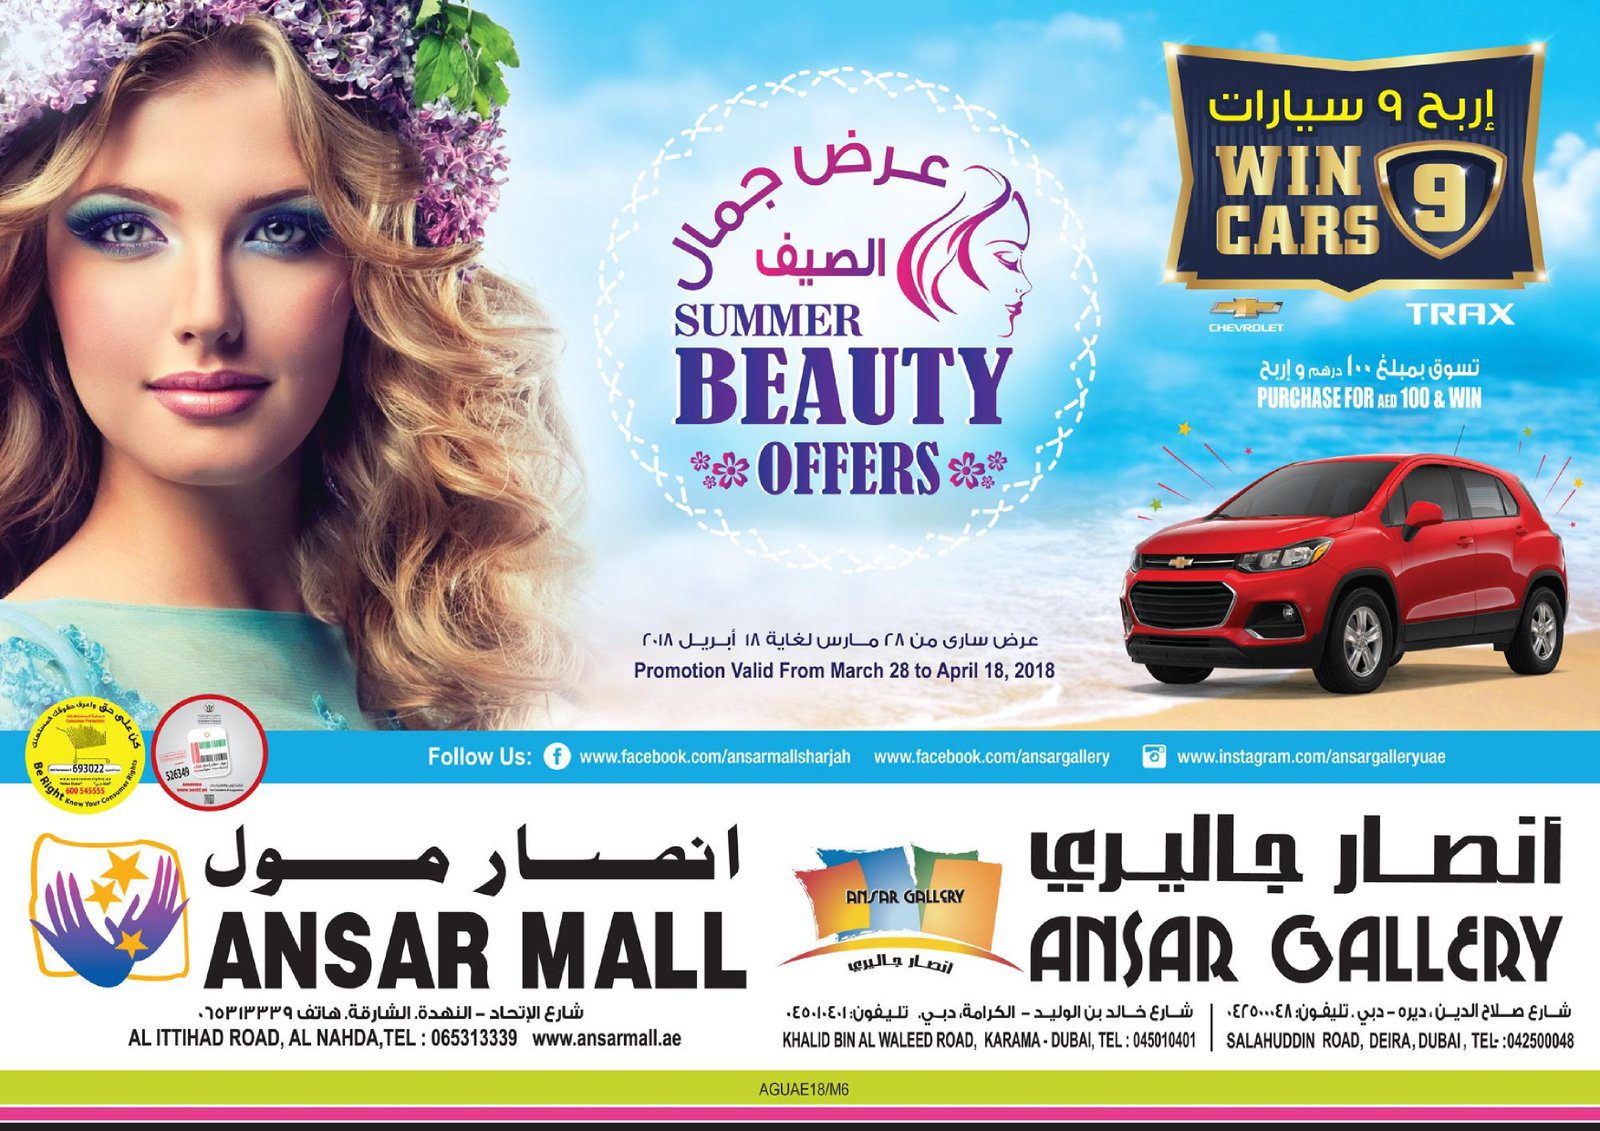 Ansar Mall Ansar Gallery Offer